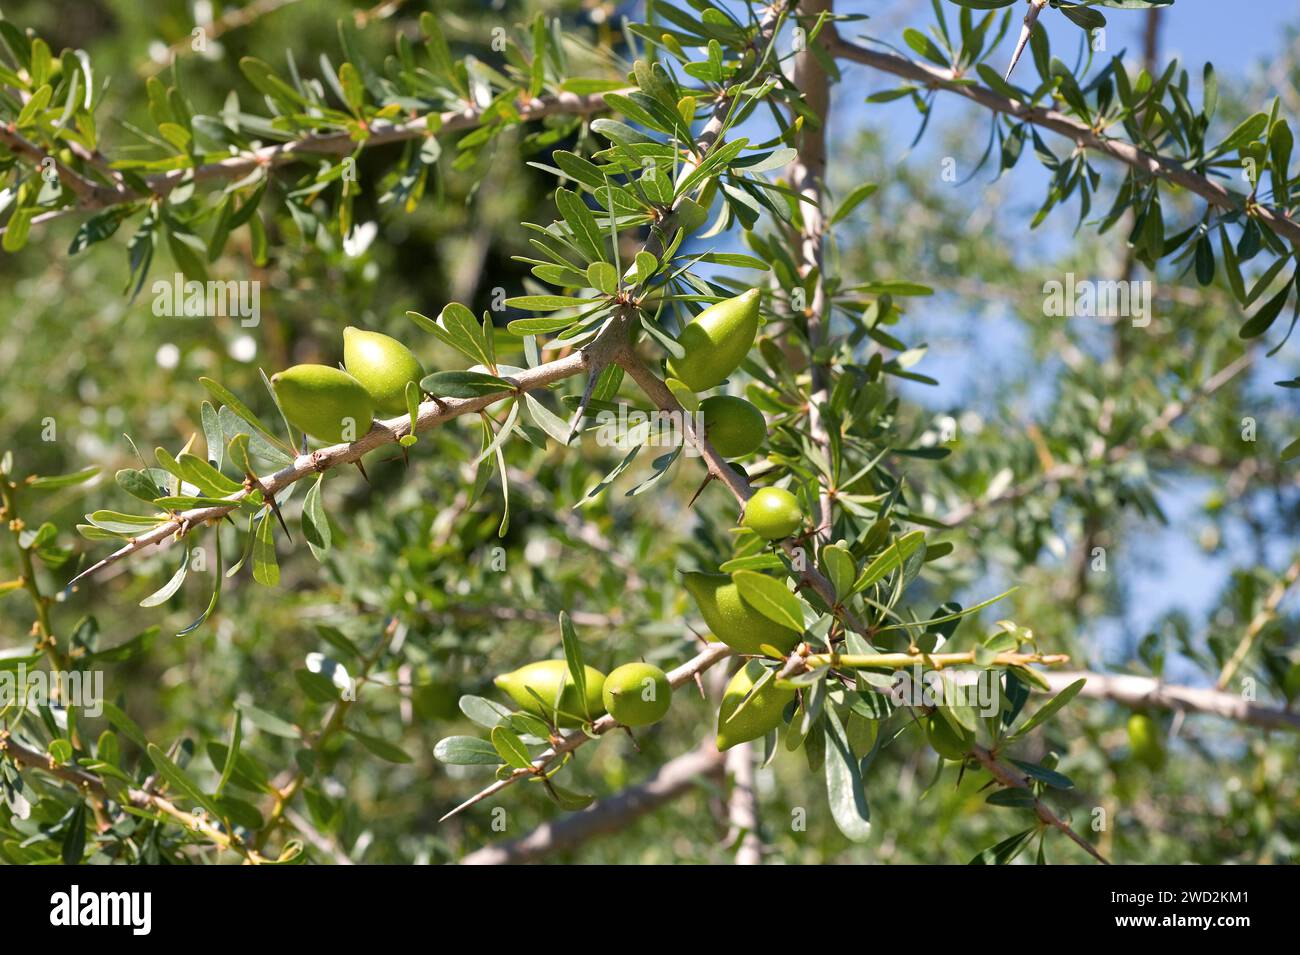 Argan (Argania spinosa oder Argania sideroxylon) ist ein Dornbaum, der im Südwesten Marokkos endemisch ist. Seine Samen enthalten ein essbares Öl, das in c sehr geschätzt wird Stockfoto